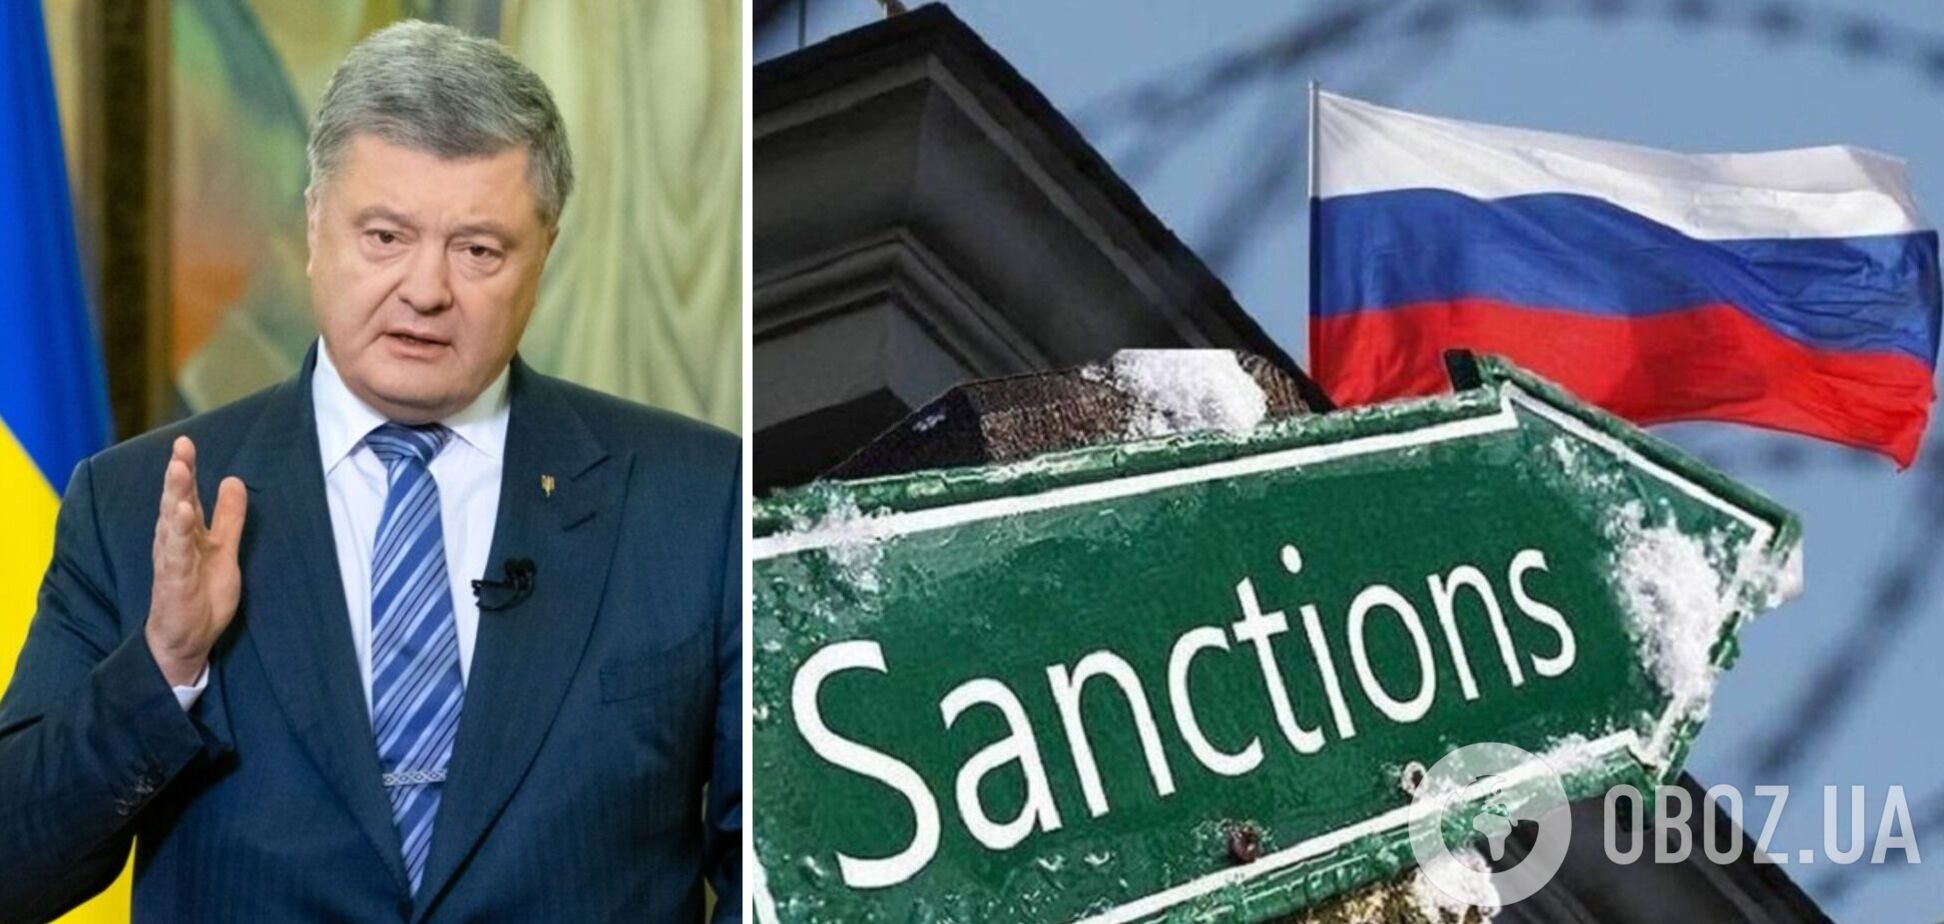 Запад должен ввести санкции, которые окончательно подорвут экономику РФ, – Порошенко